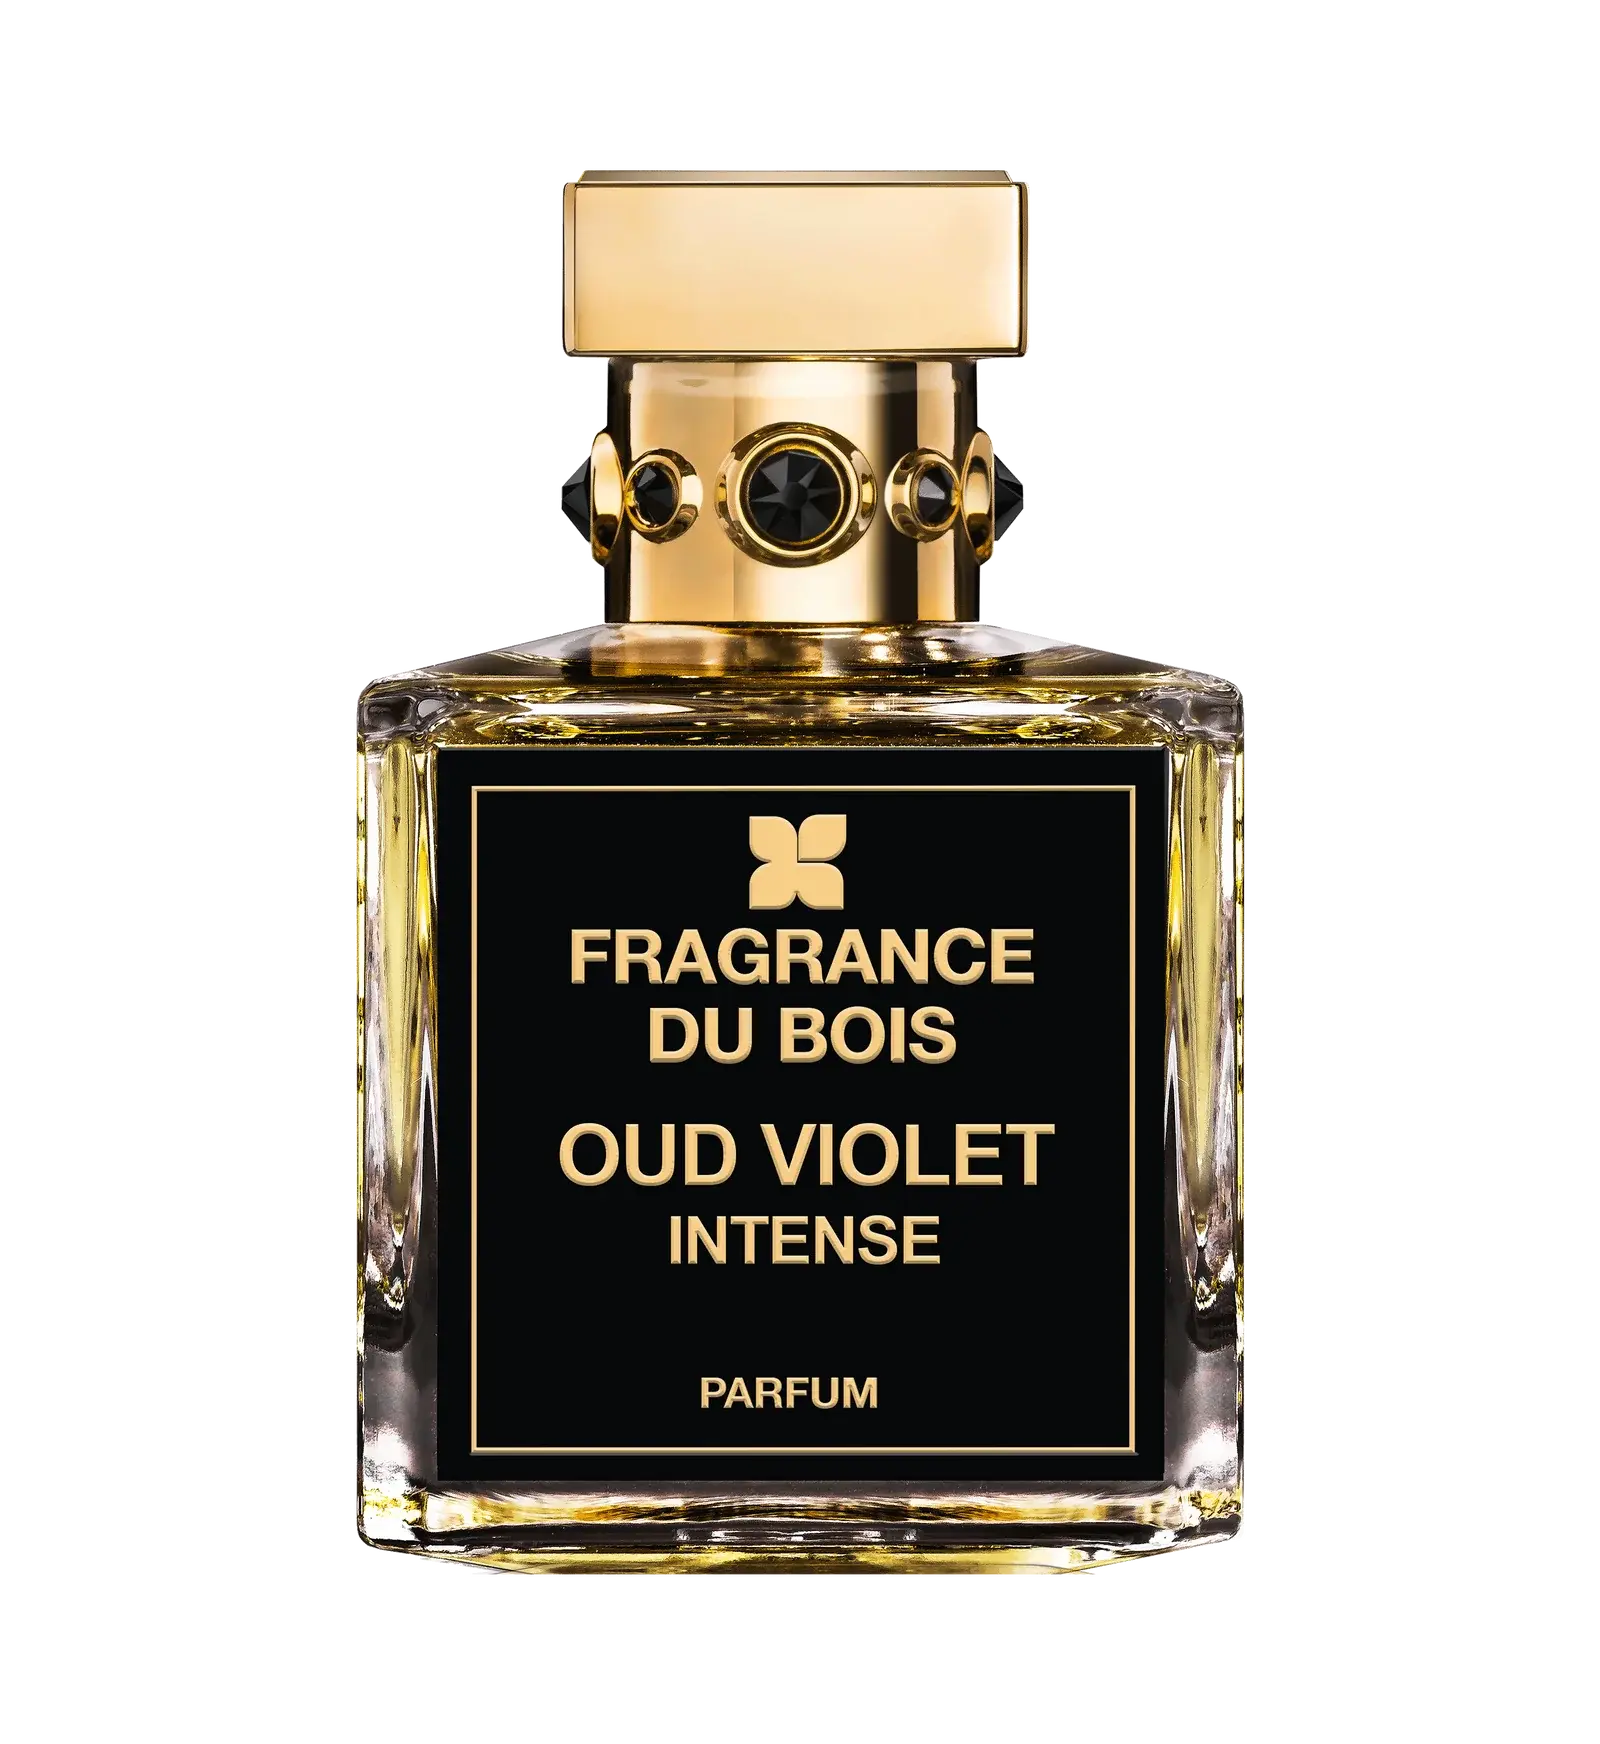 Fragrance du bois Fragrance du Bois Oud Violet Intense Edp - 50 ml